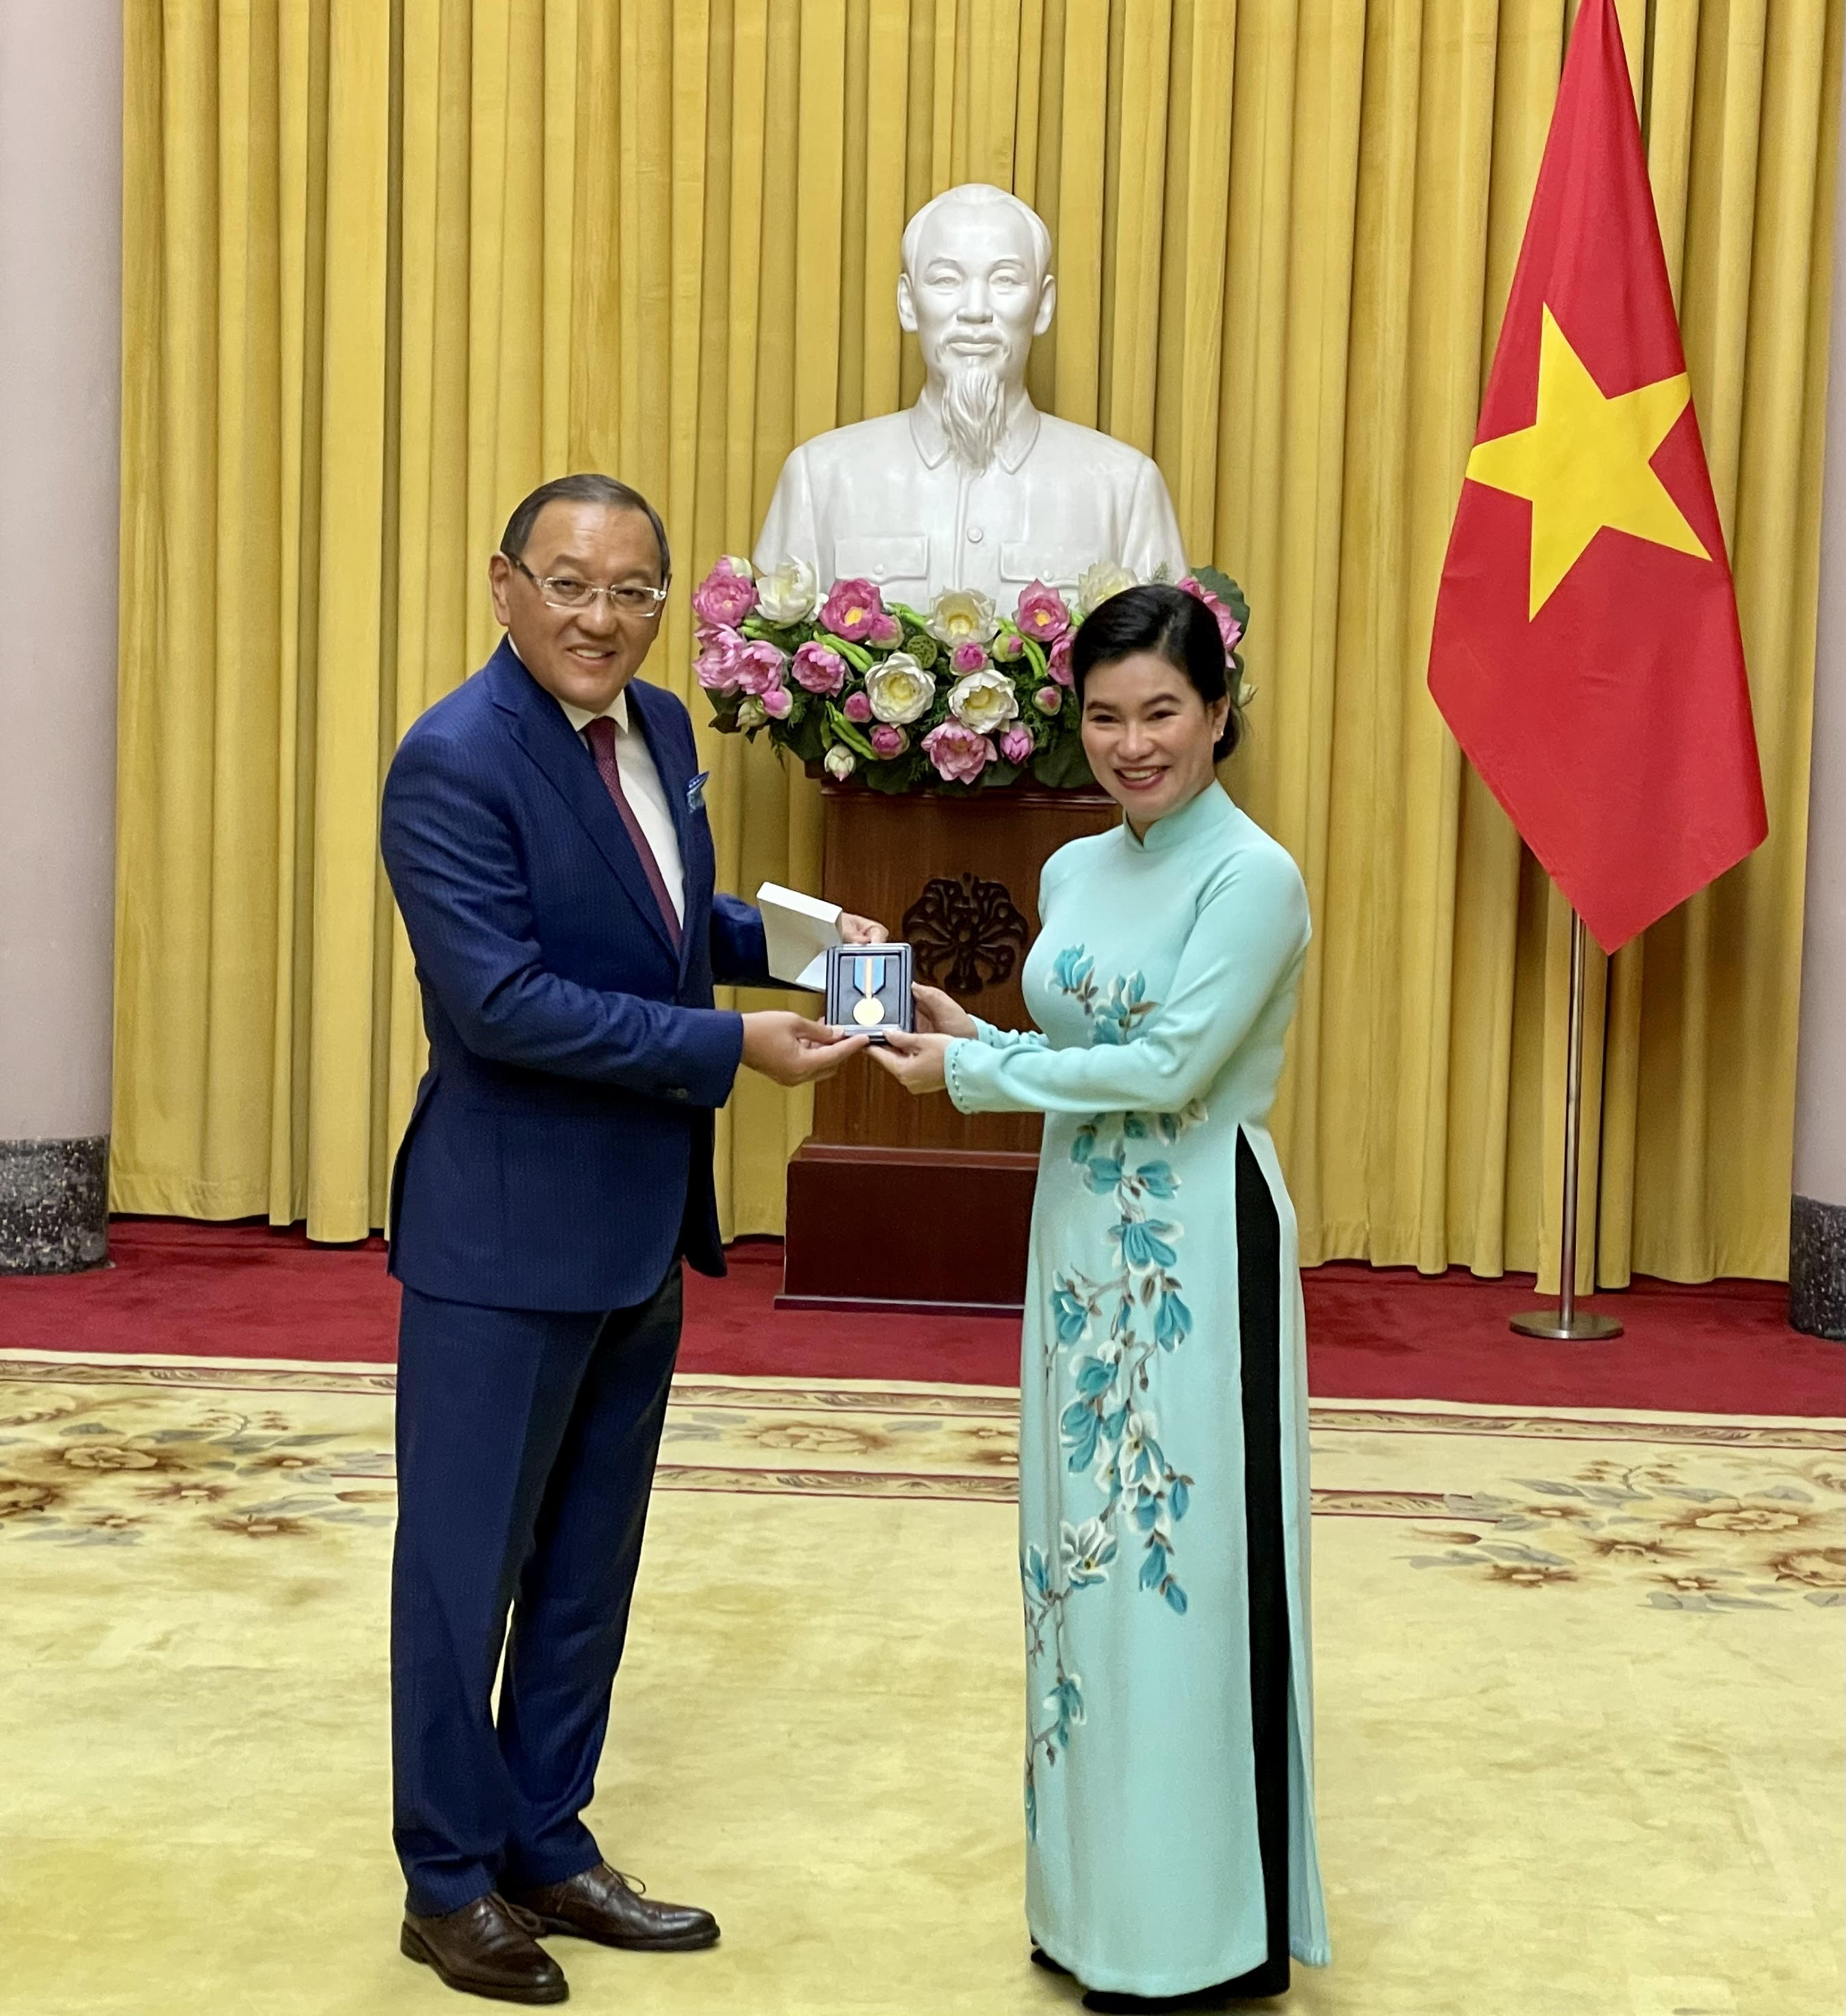 Вьетнам Президентінің көмекшісіне «Қазақстан Республикасының Тәуелсіздігіне 30 жыл» мерейтойлық медалі табыс етілді